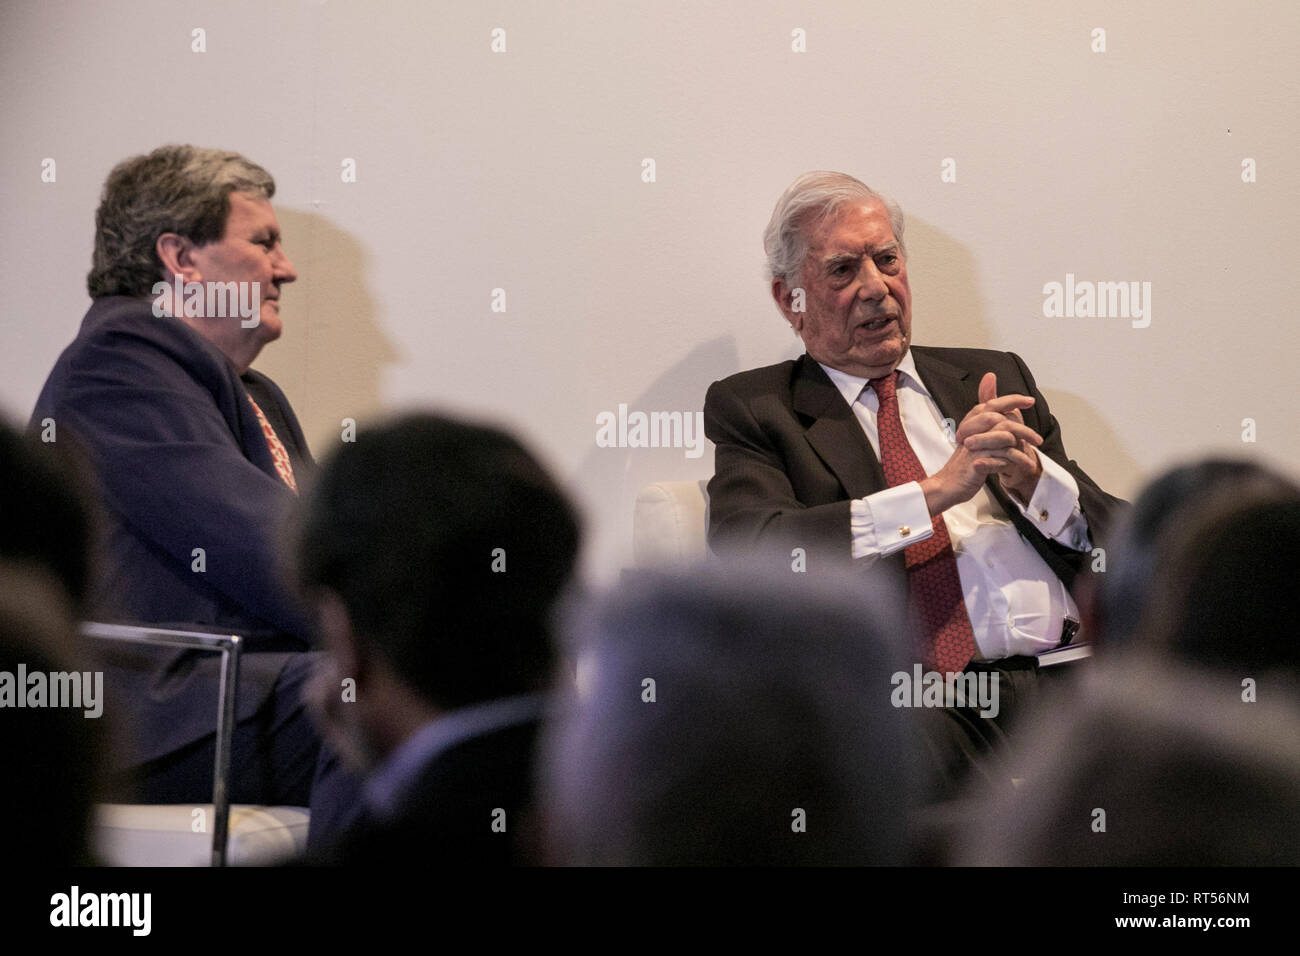 Mario Vargas Llosa während der Konferenz gesehen. Eröffnungskonferenz des 38. Ausgabe der ARCO Madrid mit Mario Vargas Llosa, der peruanische Schriftsteller gilt als einer der wichtigsten zeitgenössischen Romanciers und Essayisten. Stockfoto